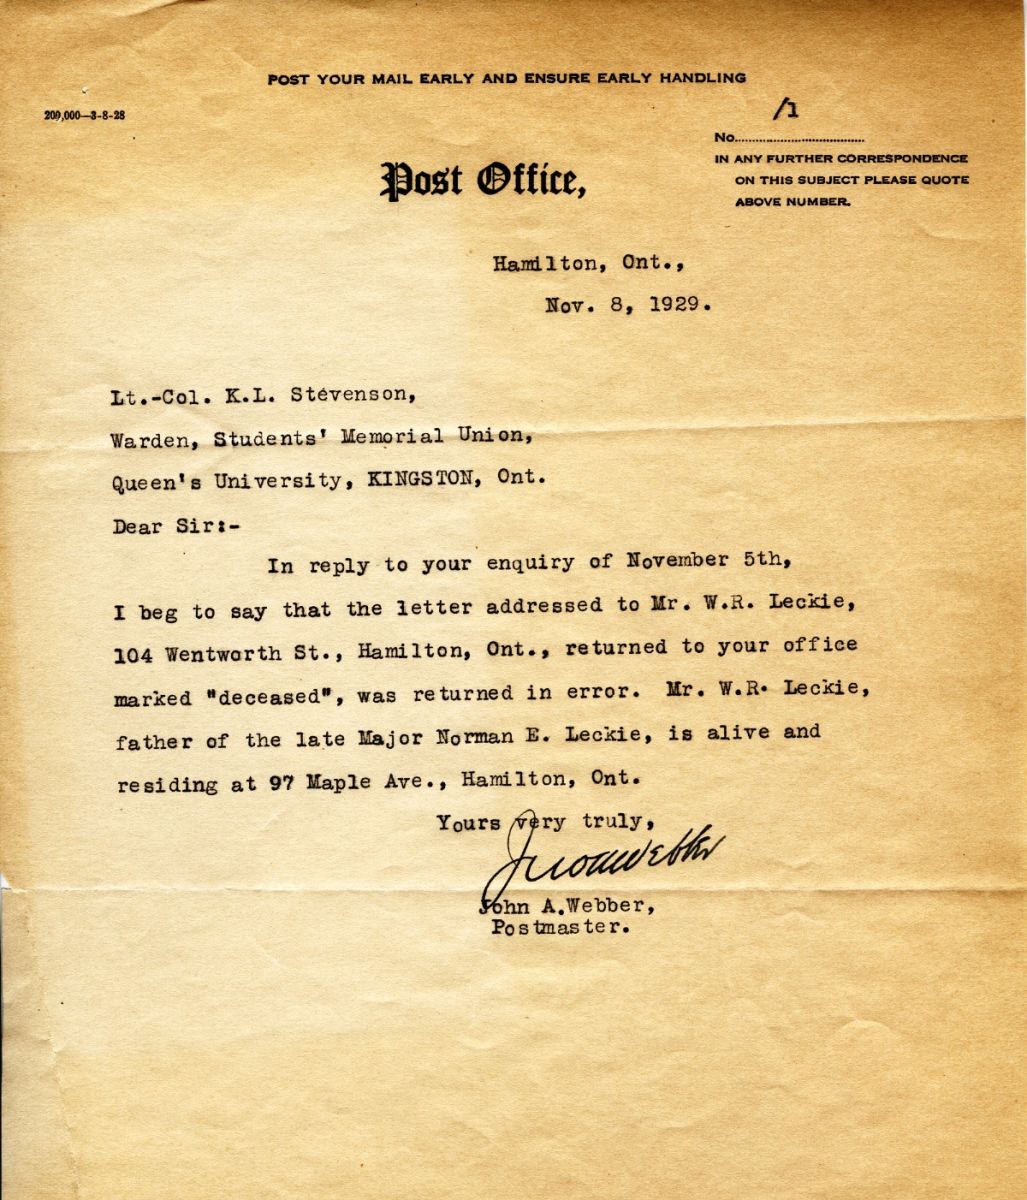 Letter from the Postmaster John. A. Webber to Lt. Col. K.L. Stevenson, 8th November 1929